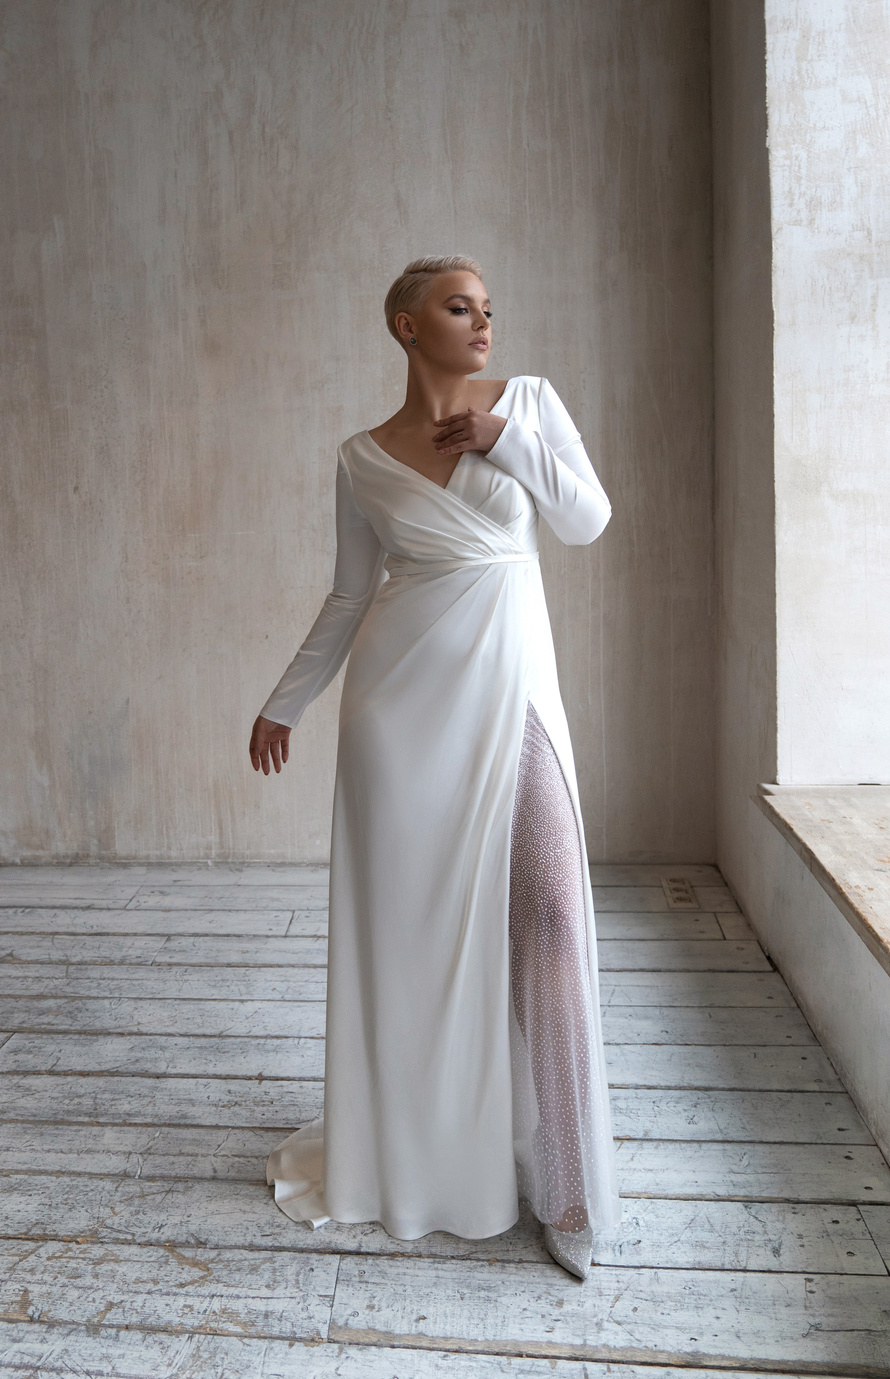 Свадебное платье «Оруэл плюс сайз» Марта — купить в Москве платье Оруэл из коллекции 2021 года